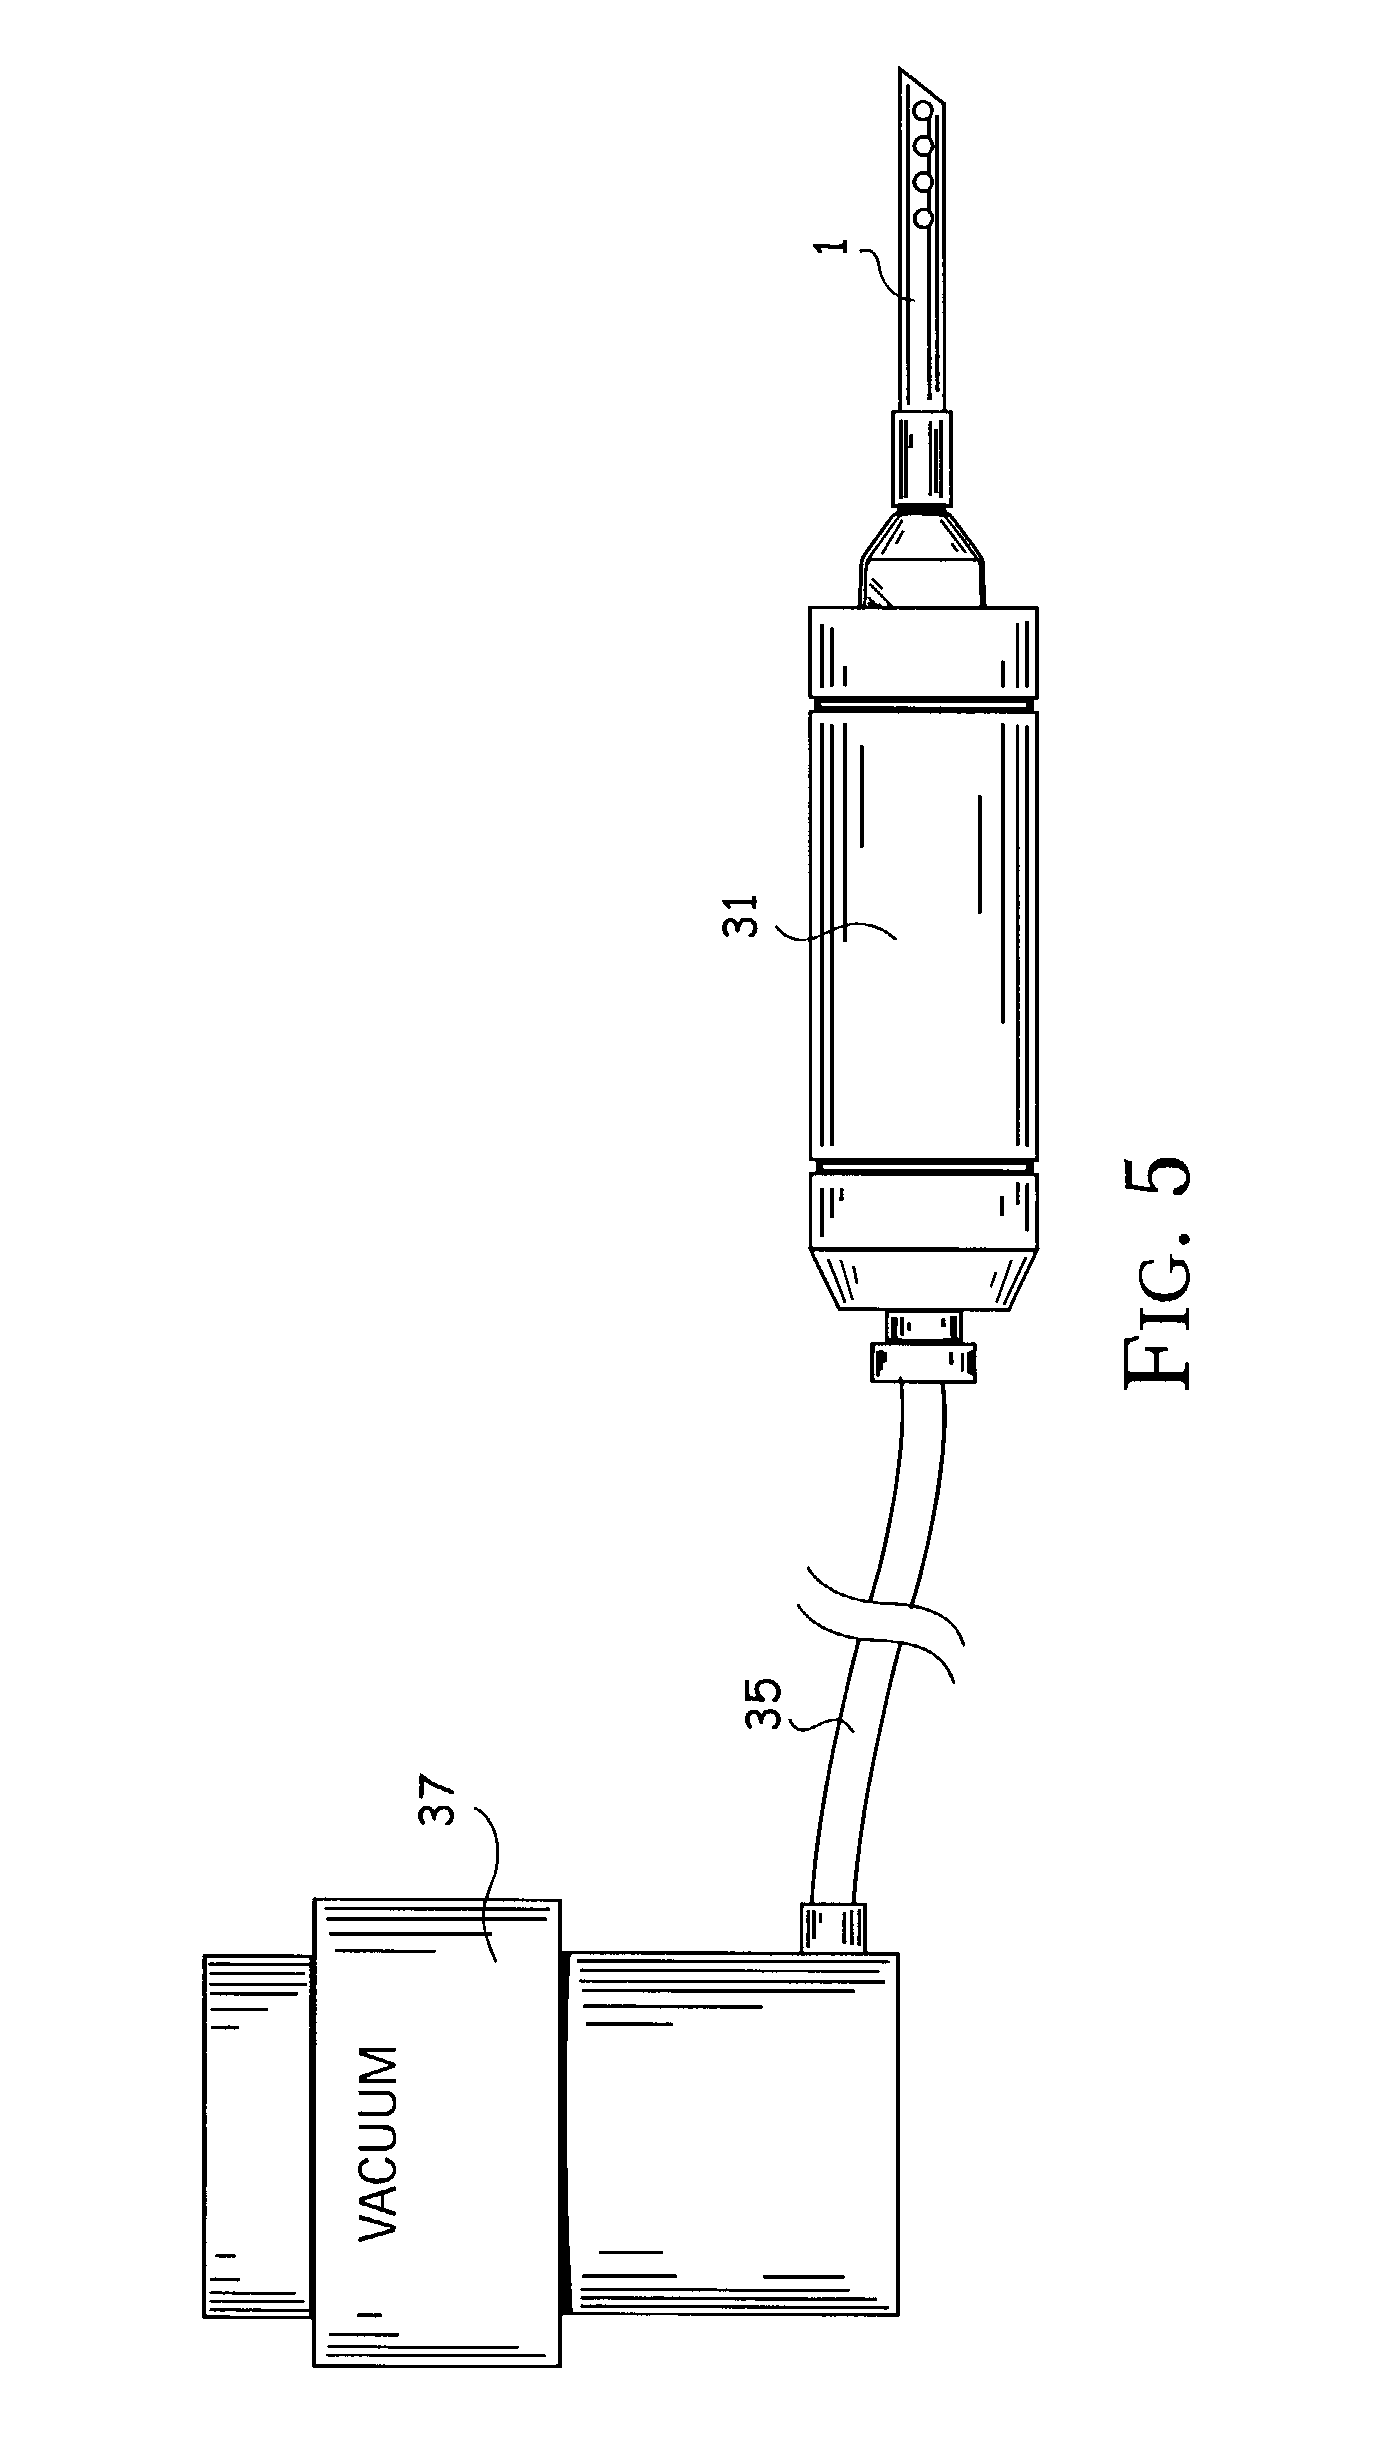 Sample probe for aerosol sampling apparatus